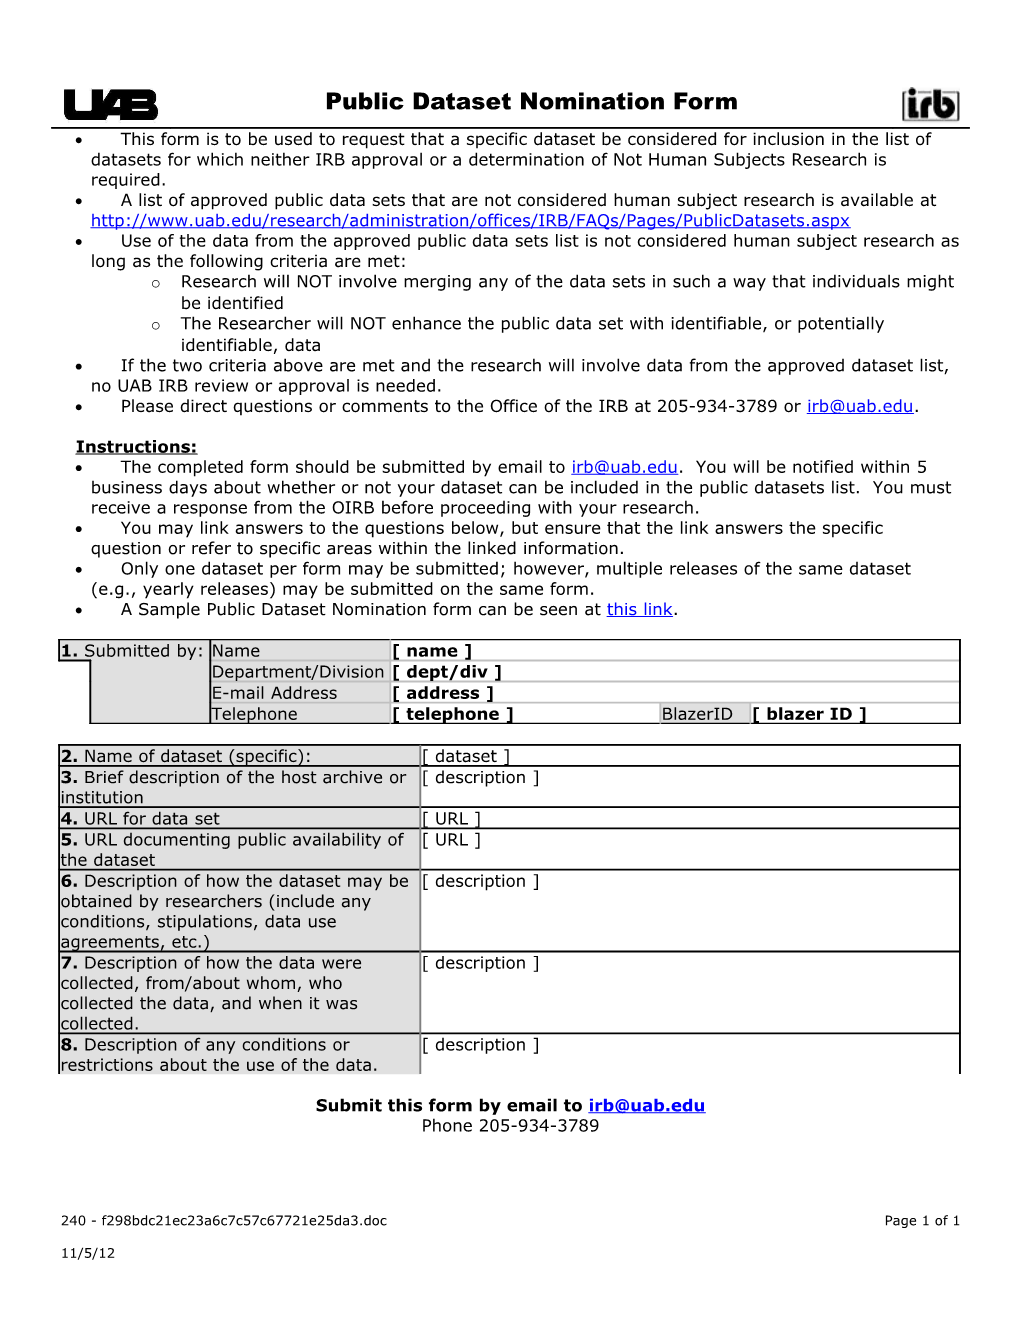 Public Dataset Nomination Form (FOR240)